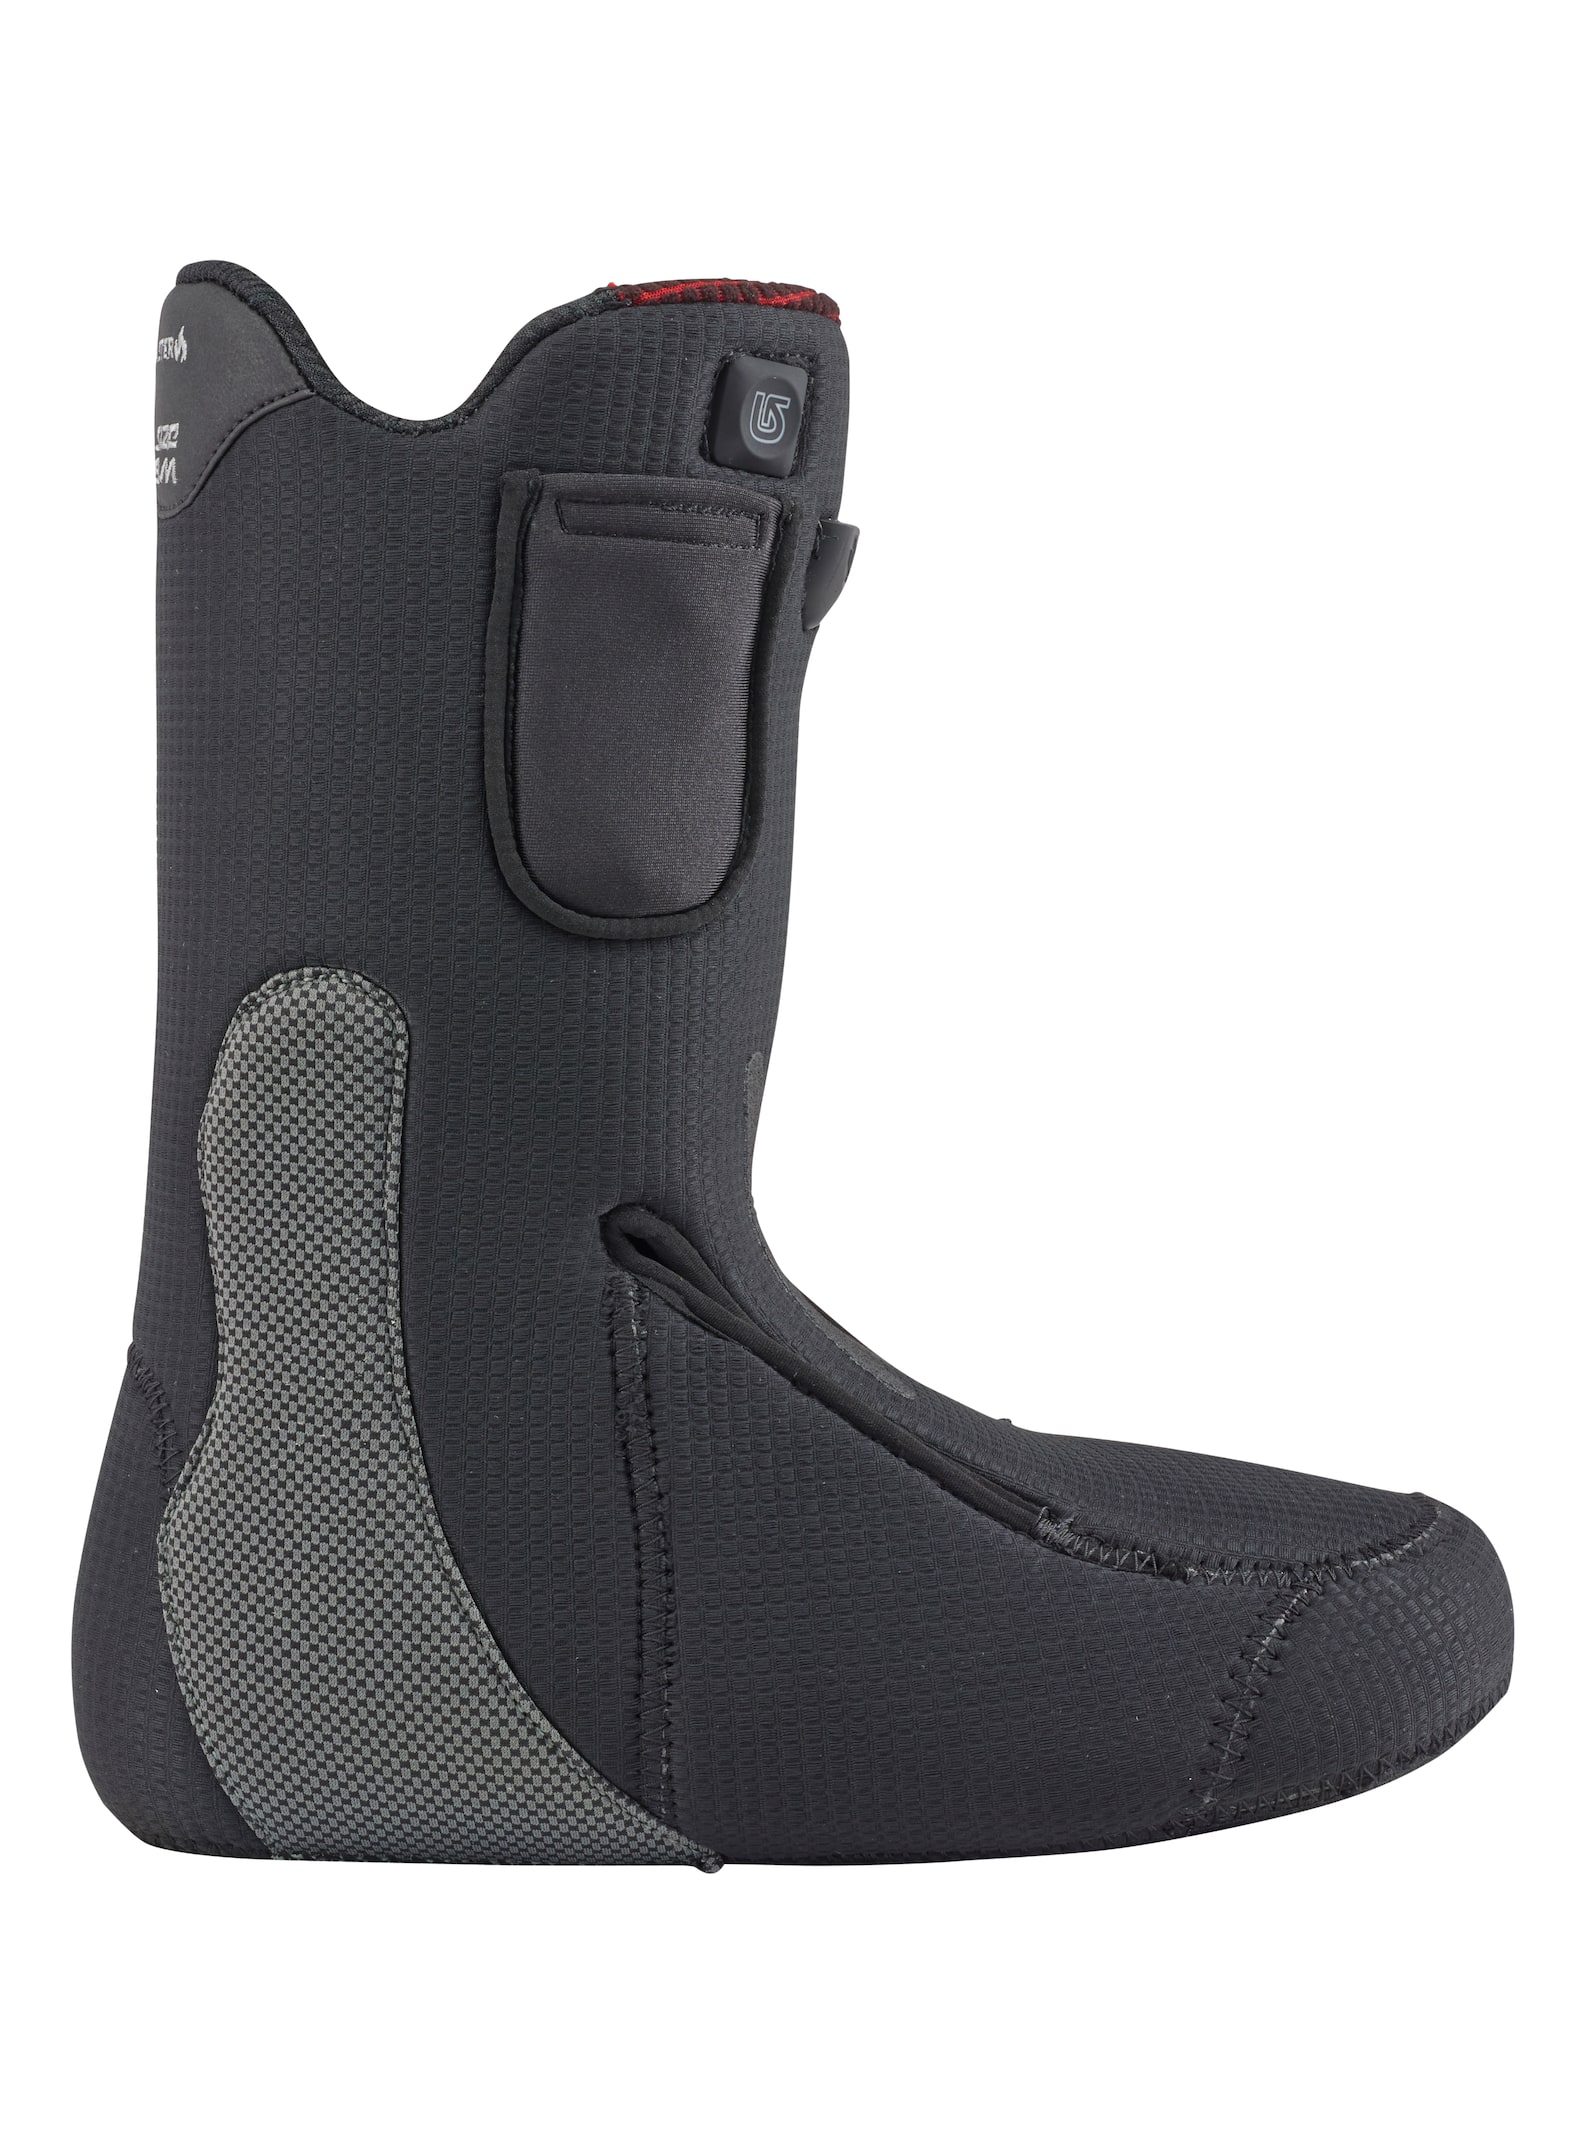 Burton - Chaussons pour boots de snowboard chauffants Toaster homme, Black, 115 product